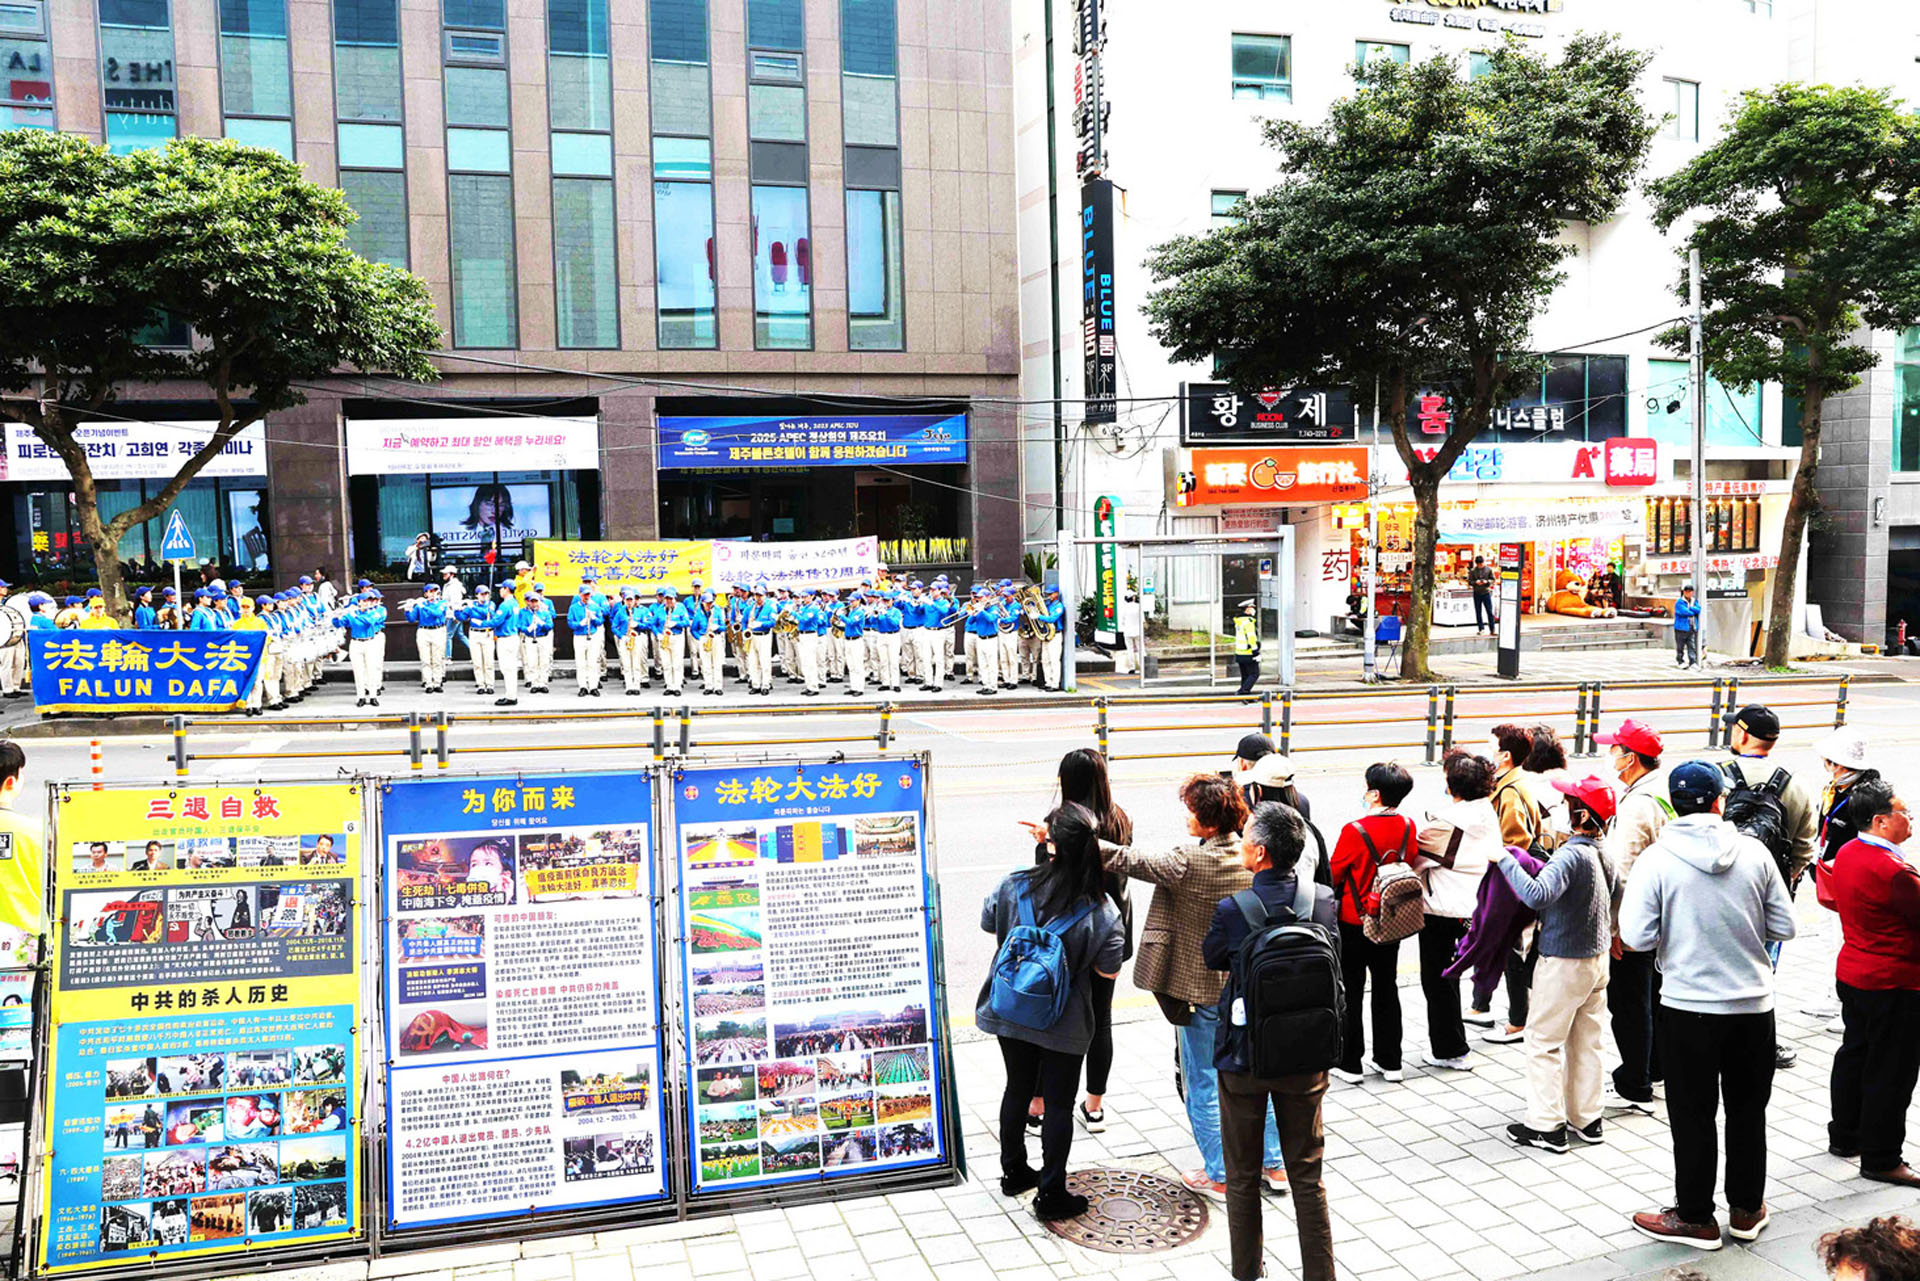 Image for article Île de Jeju, Corée du Sud : Présentation du Falun Dafa aux résidents et aux touristes